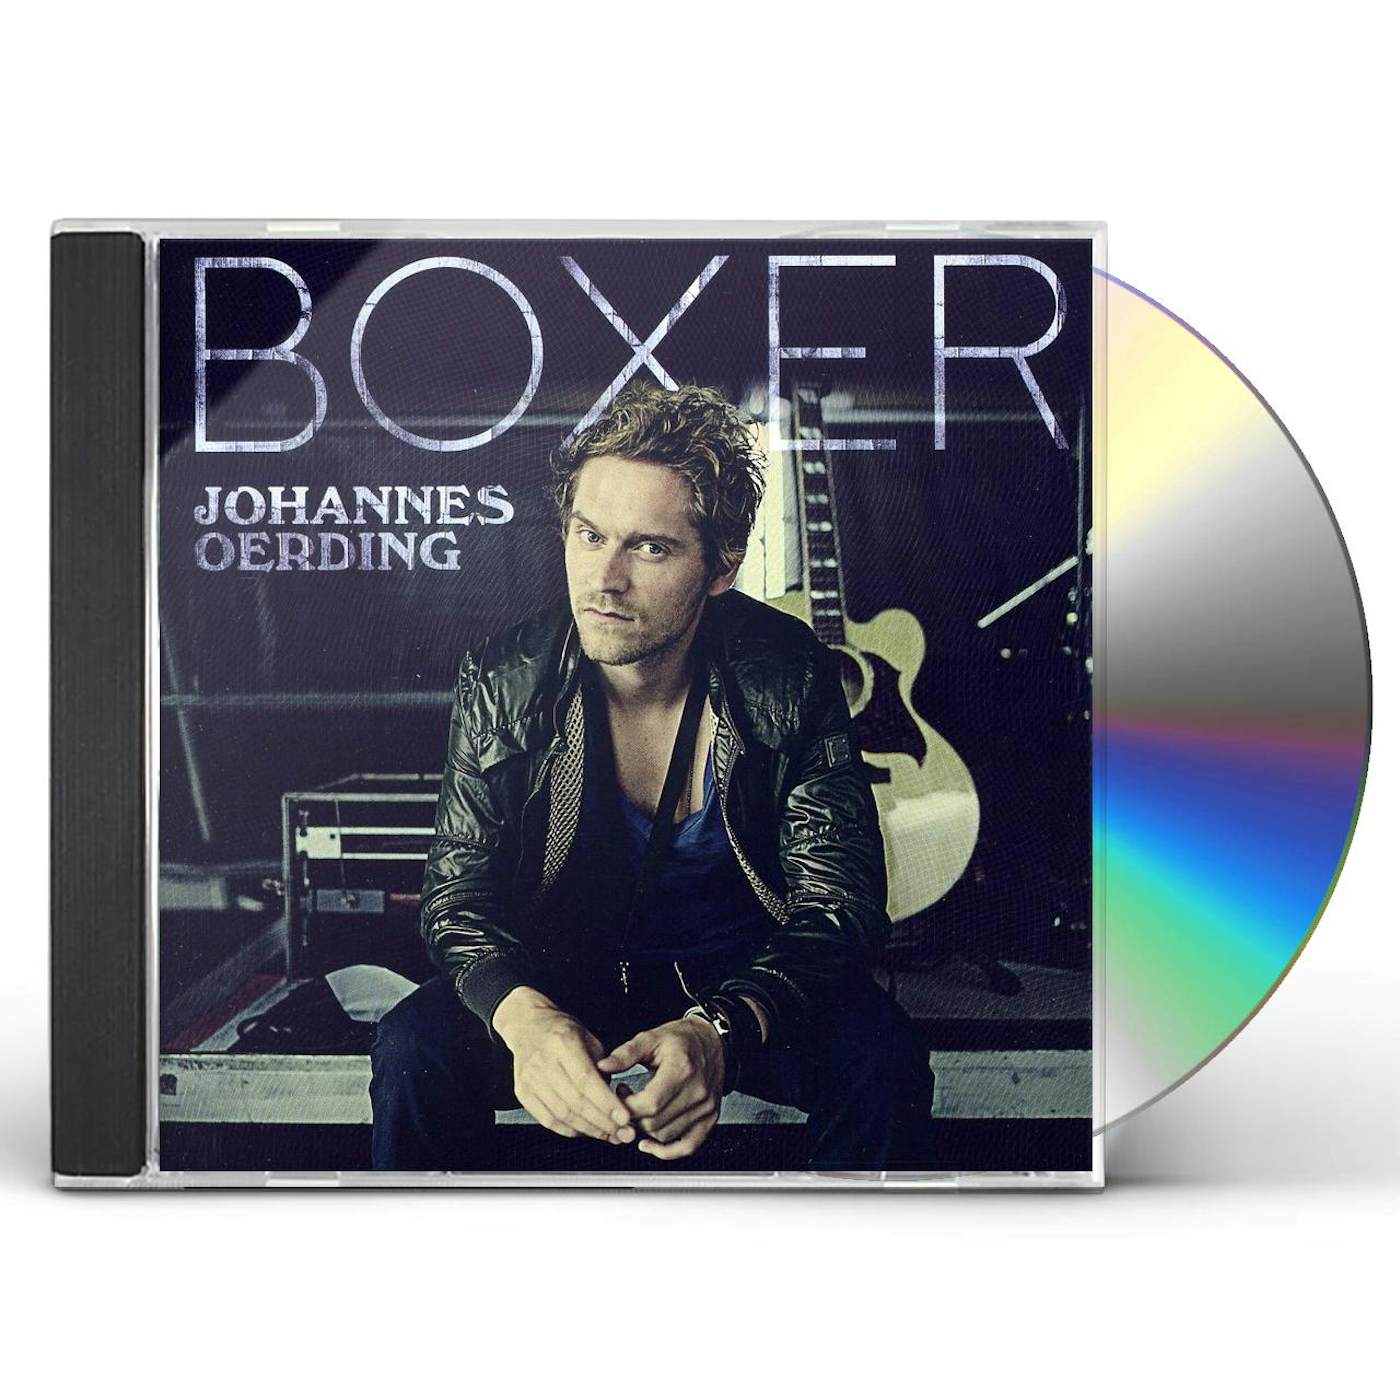 Johannes Oerding BOXER CD